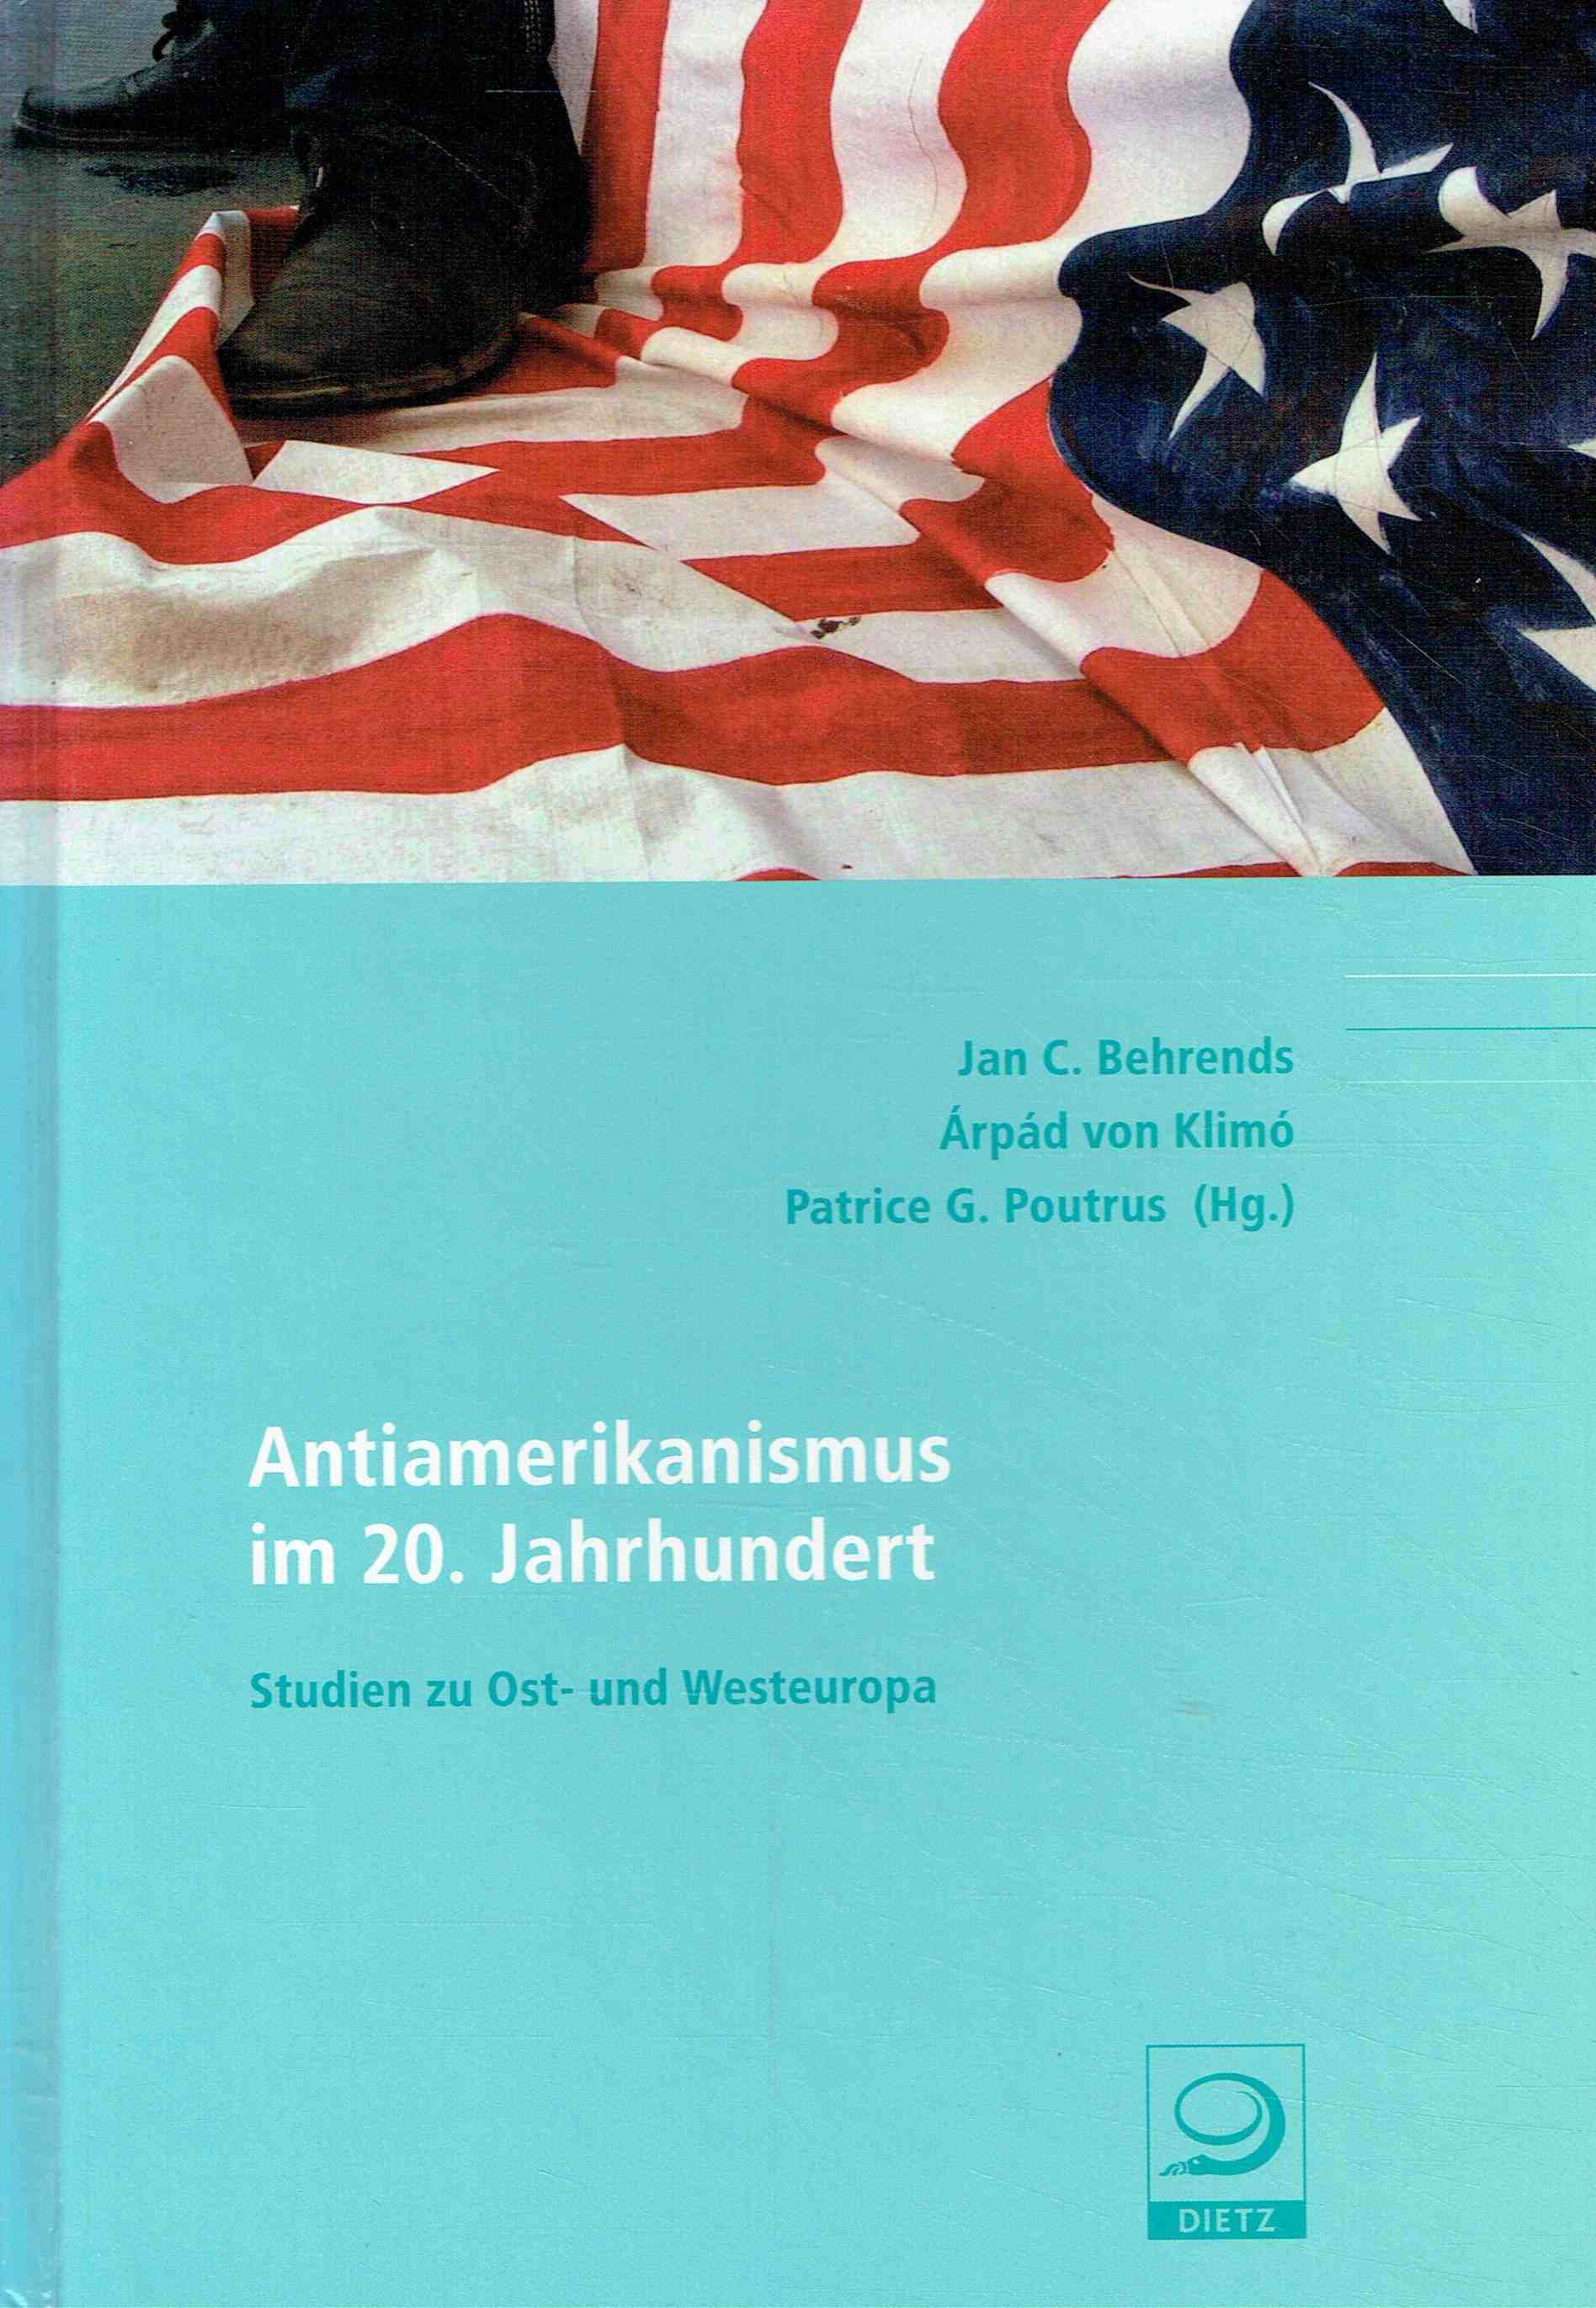 Antiamerikanismus im 20. Jahrhundert: Studien zu Ost- und Westeuropa (Politik- und Gesellschaftsgeschichte). - Behrends, Jan C.; Klimo, Arpad von; Poutrus, Patrice G.